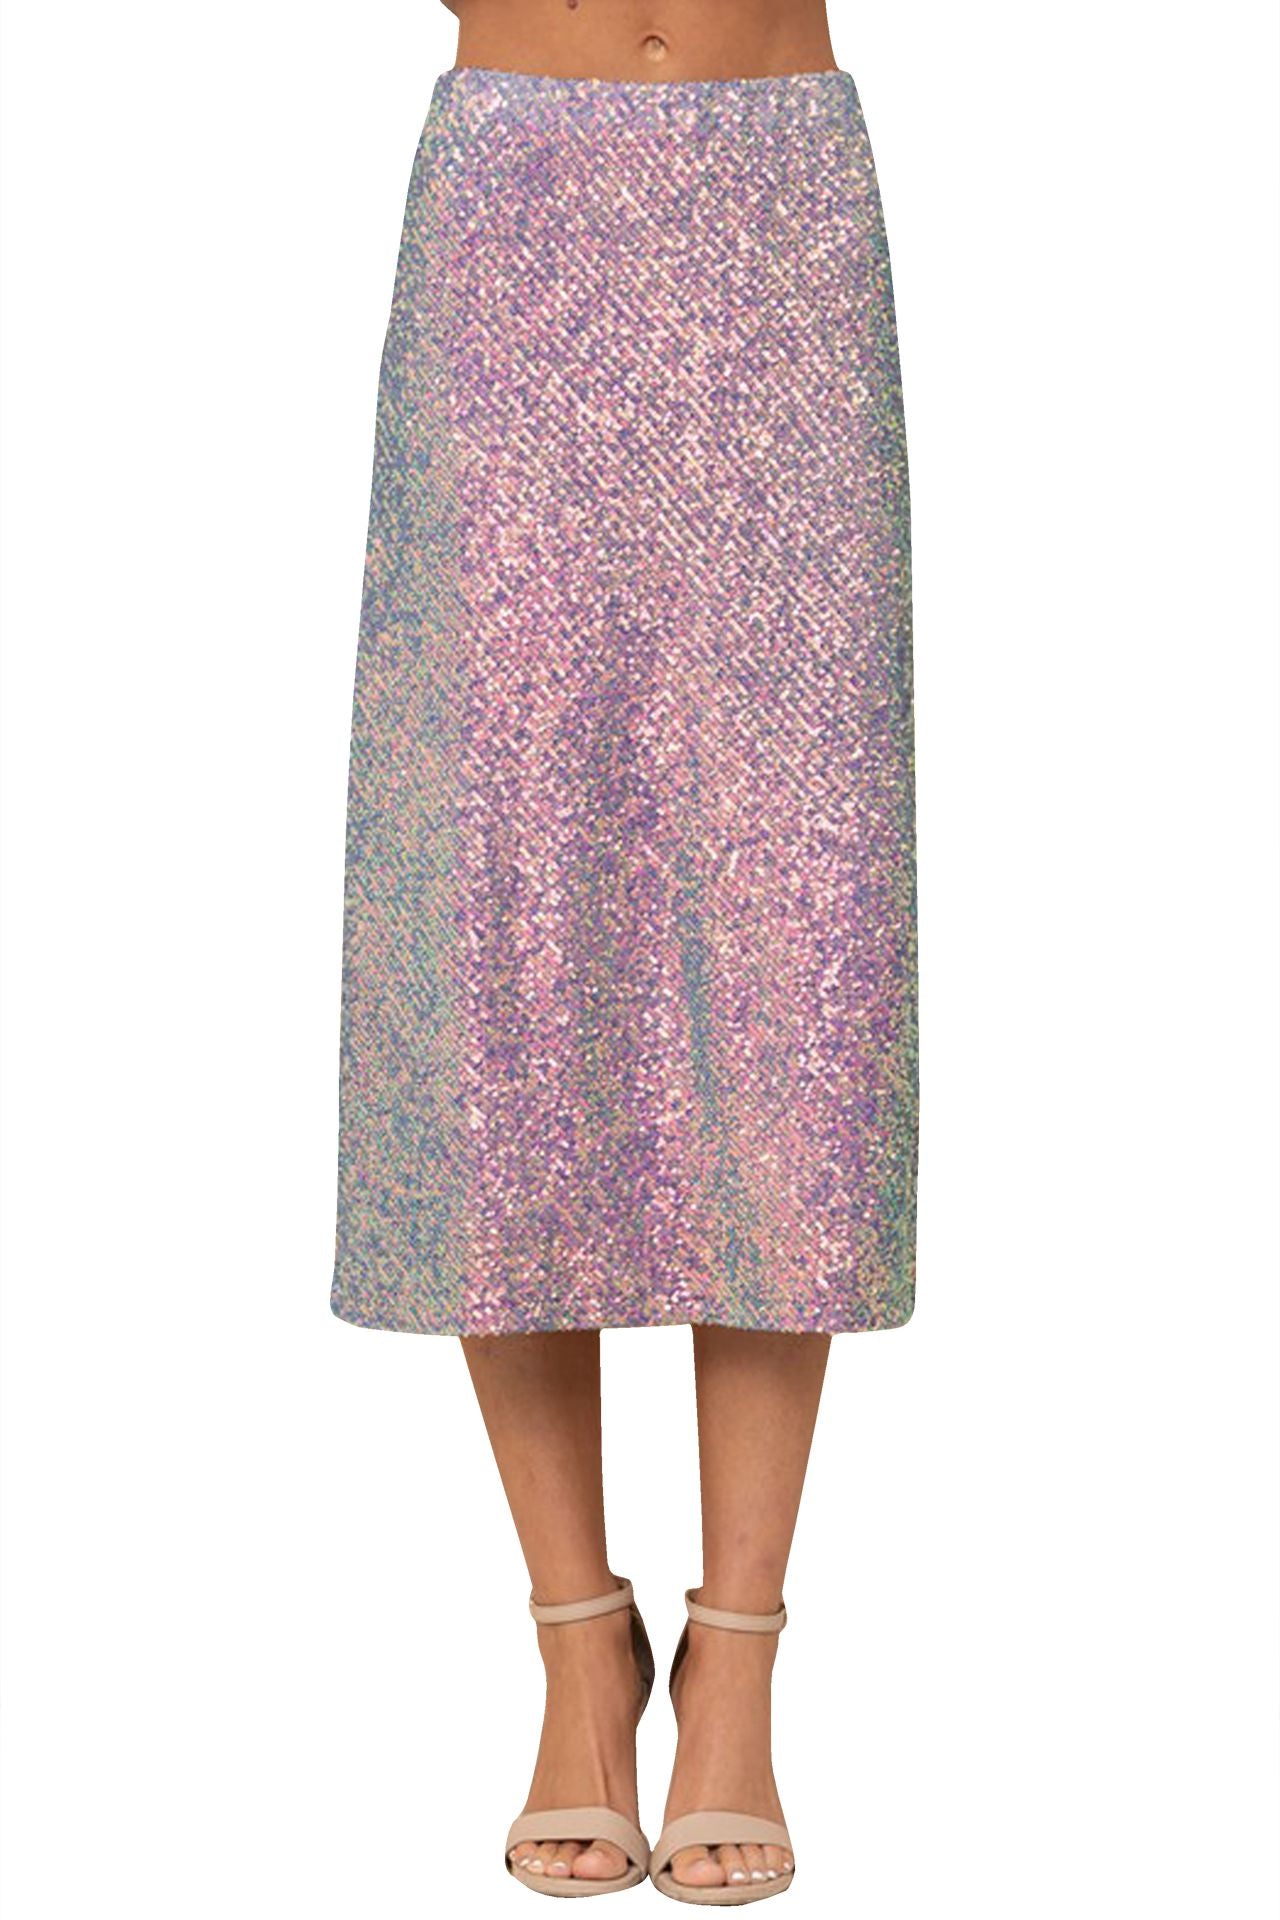 "plus size sequin skirt" "purple sequin skirt" "sequin womens skirt" "Kyle X Shahida" "sequin midi skirt"